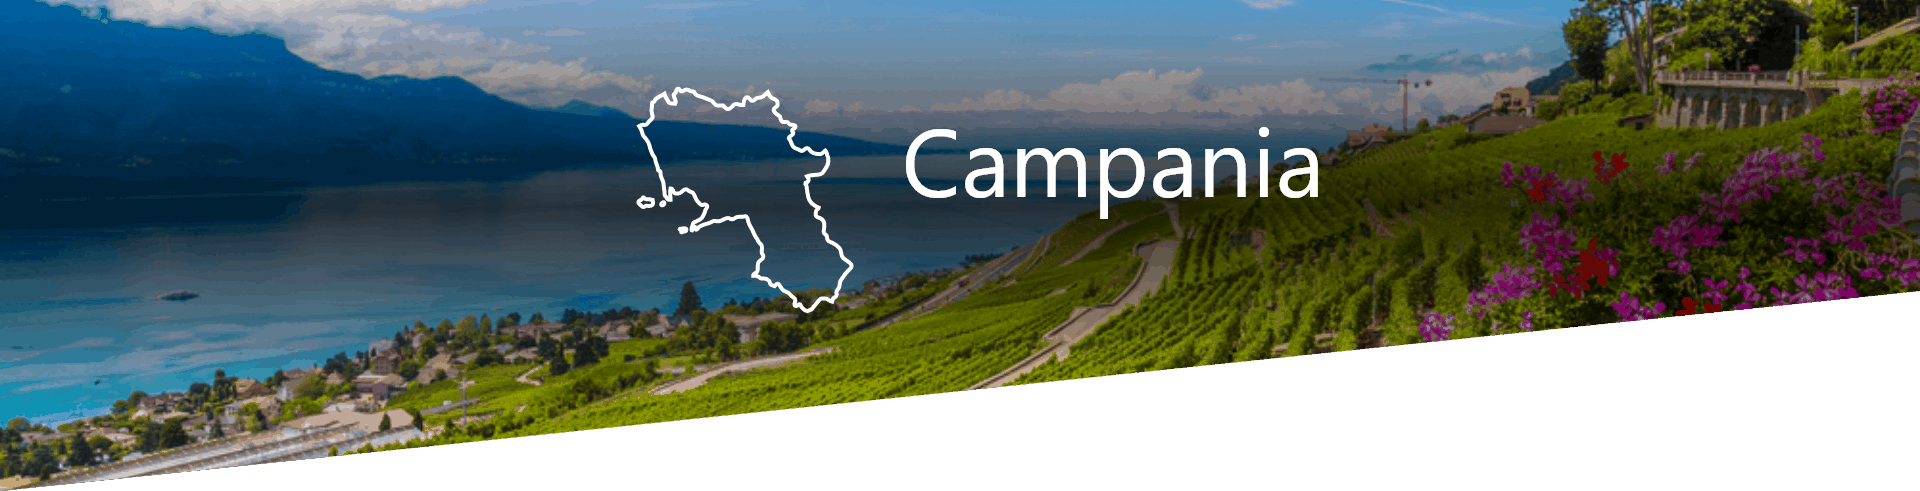 Selezione Vini e Cantine in Campania